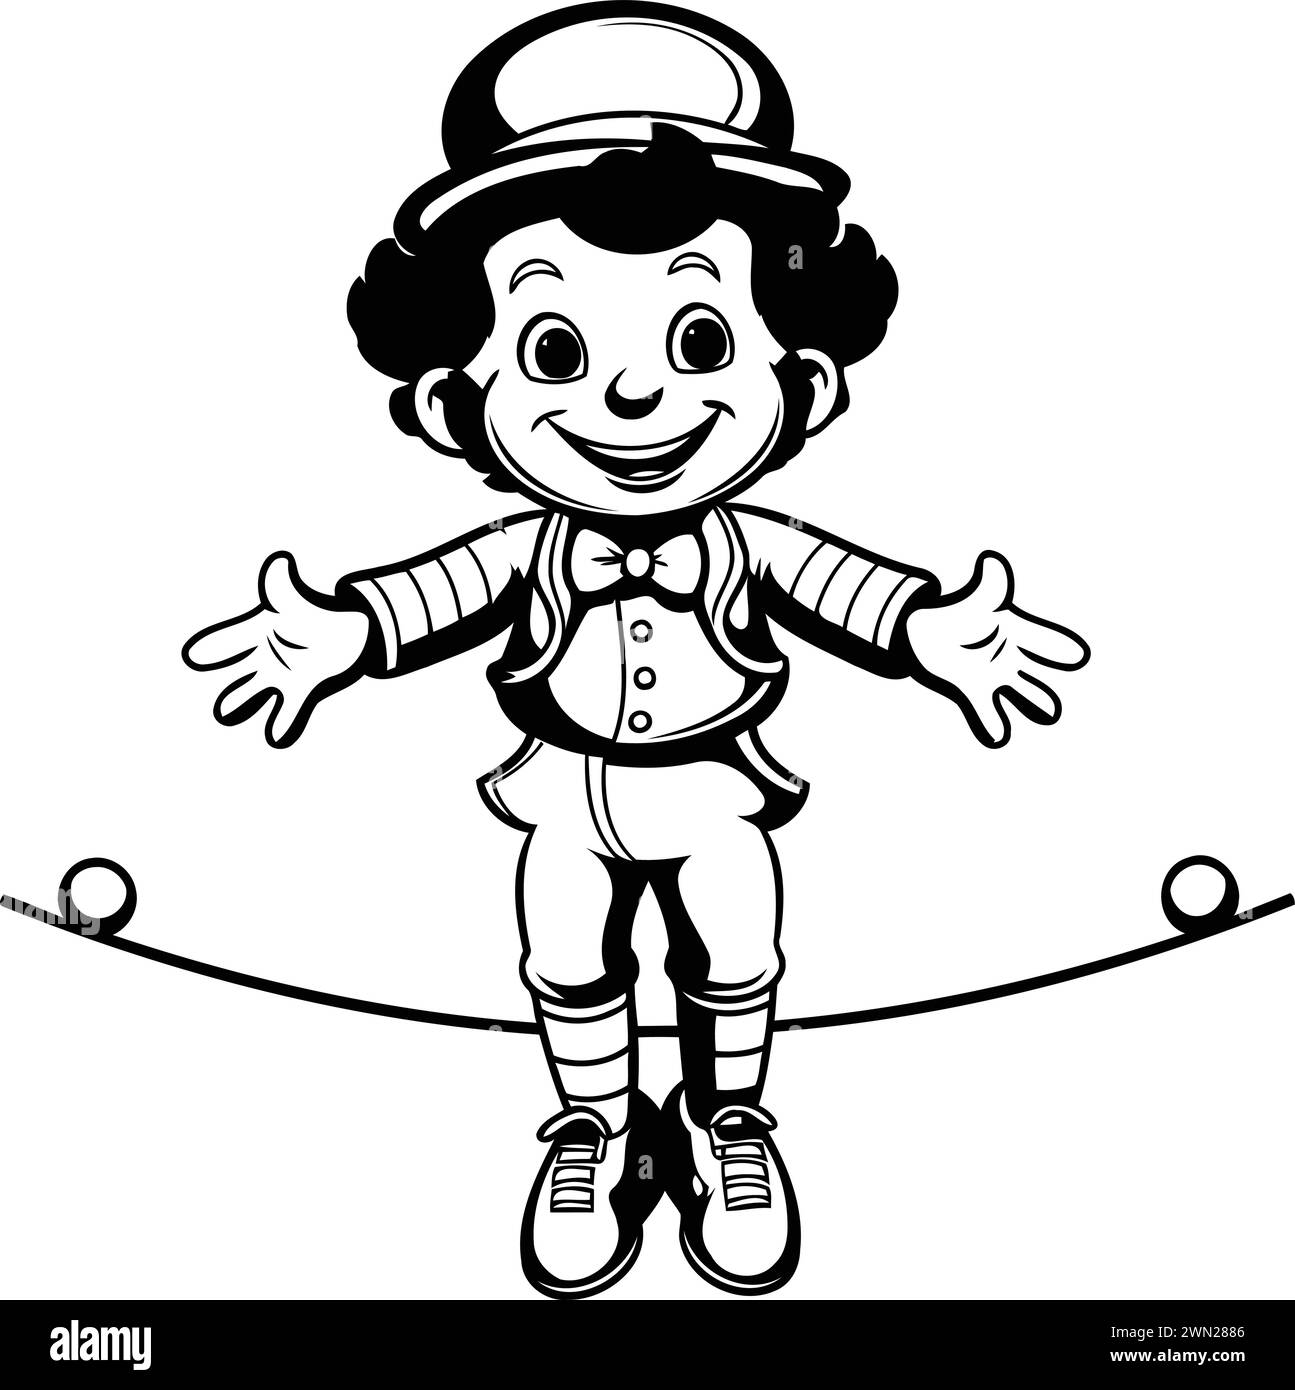 Illustration vectorielle de Cartoon Circus Boy équilibrant sur une corde raide. Illustration de Vecteur